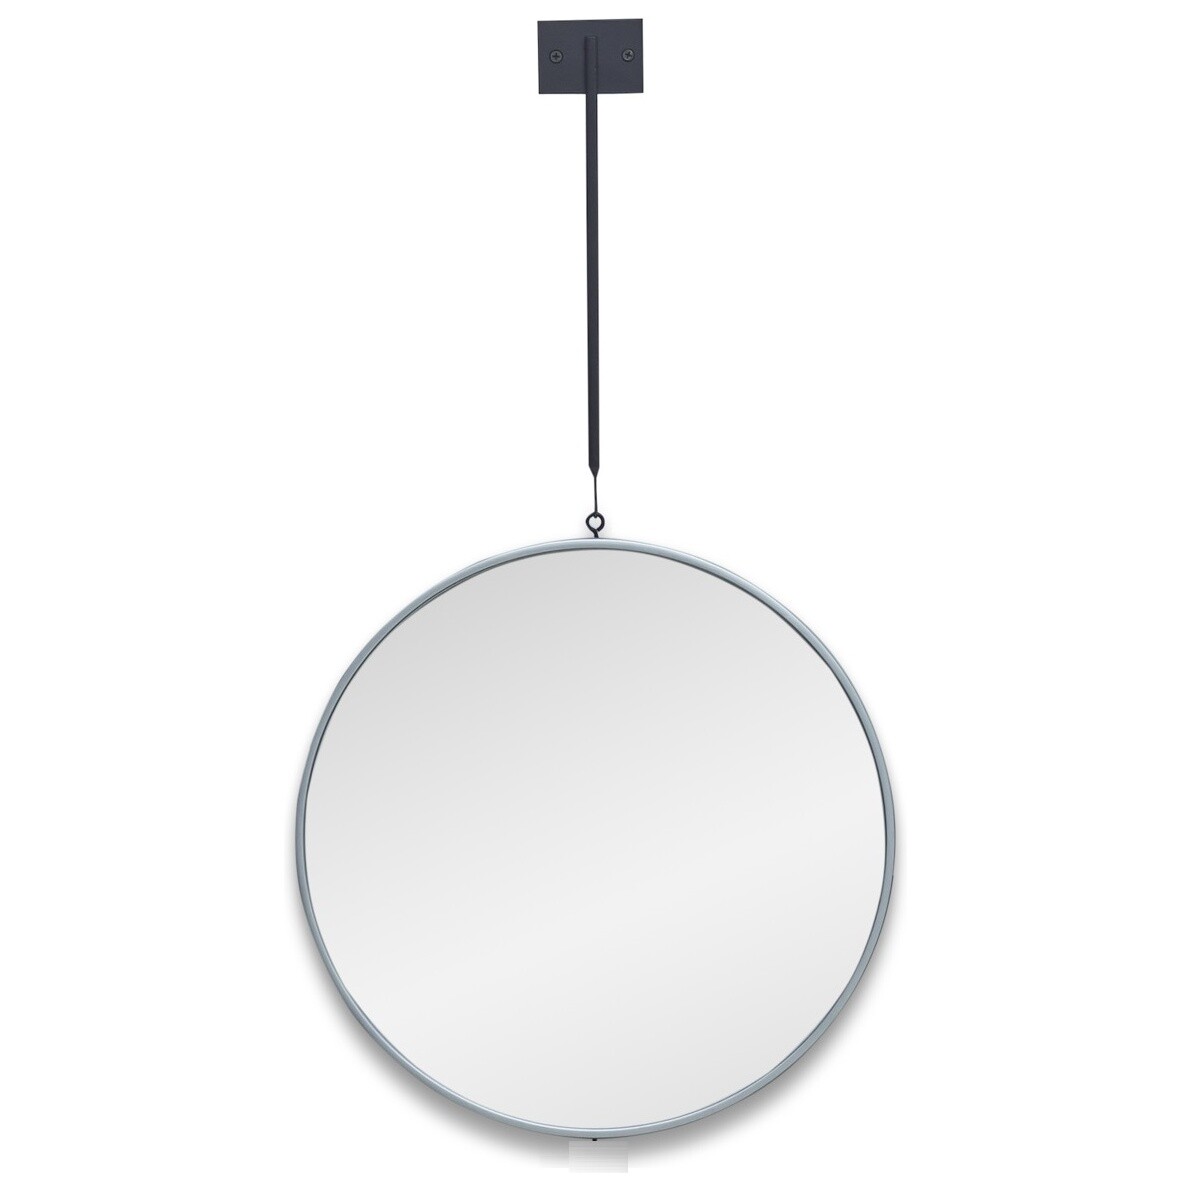 Зеркало настенное круглое на подвесе в тонкой раме серебро Tandem M Silver